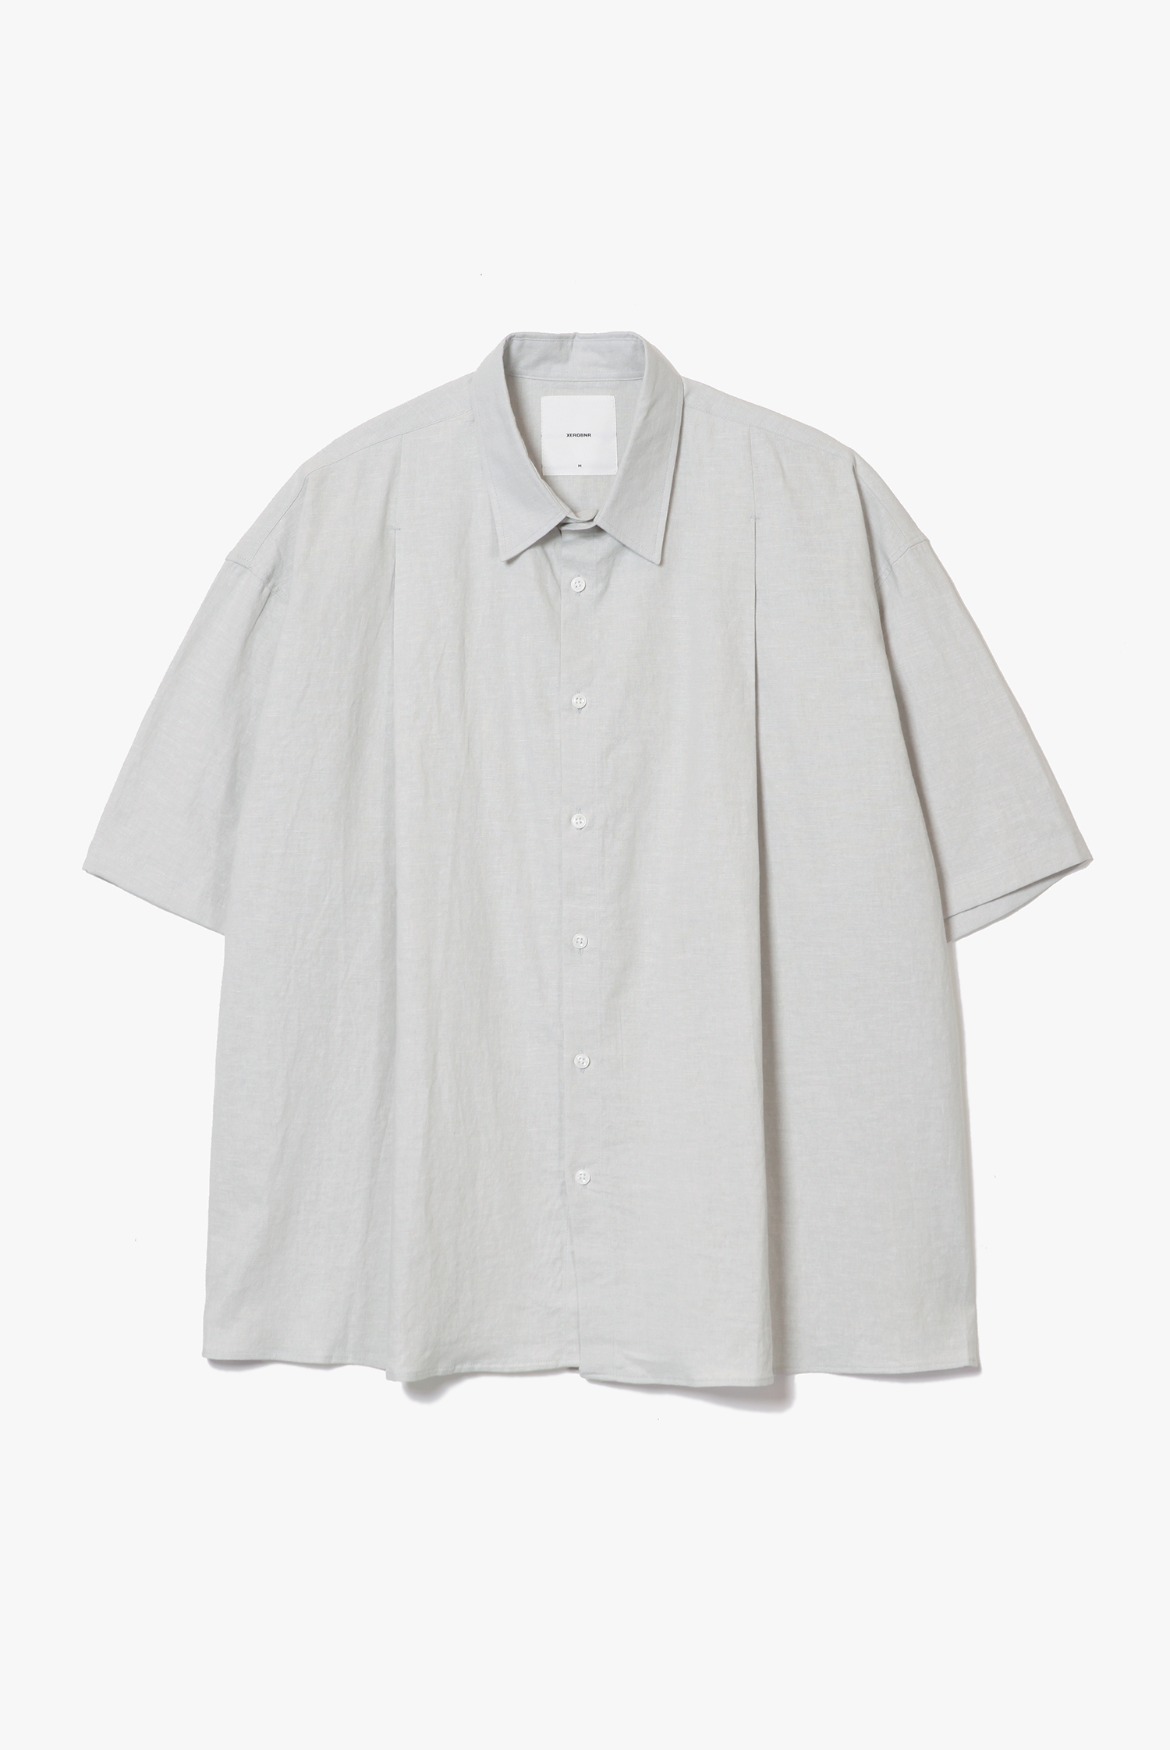 Deep Tuck Linen Shirts [Light Grey]